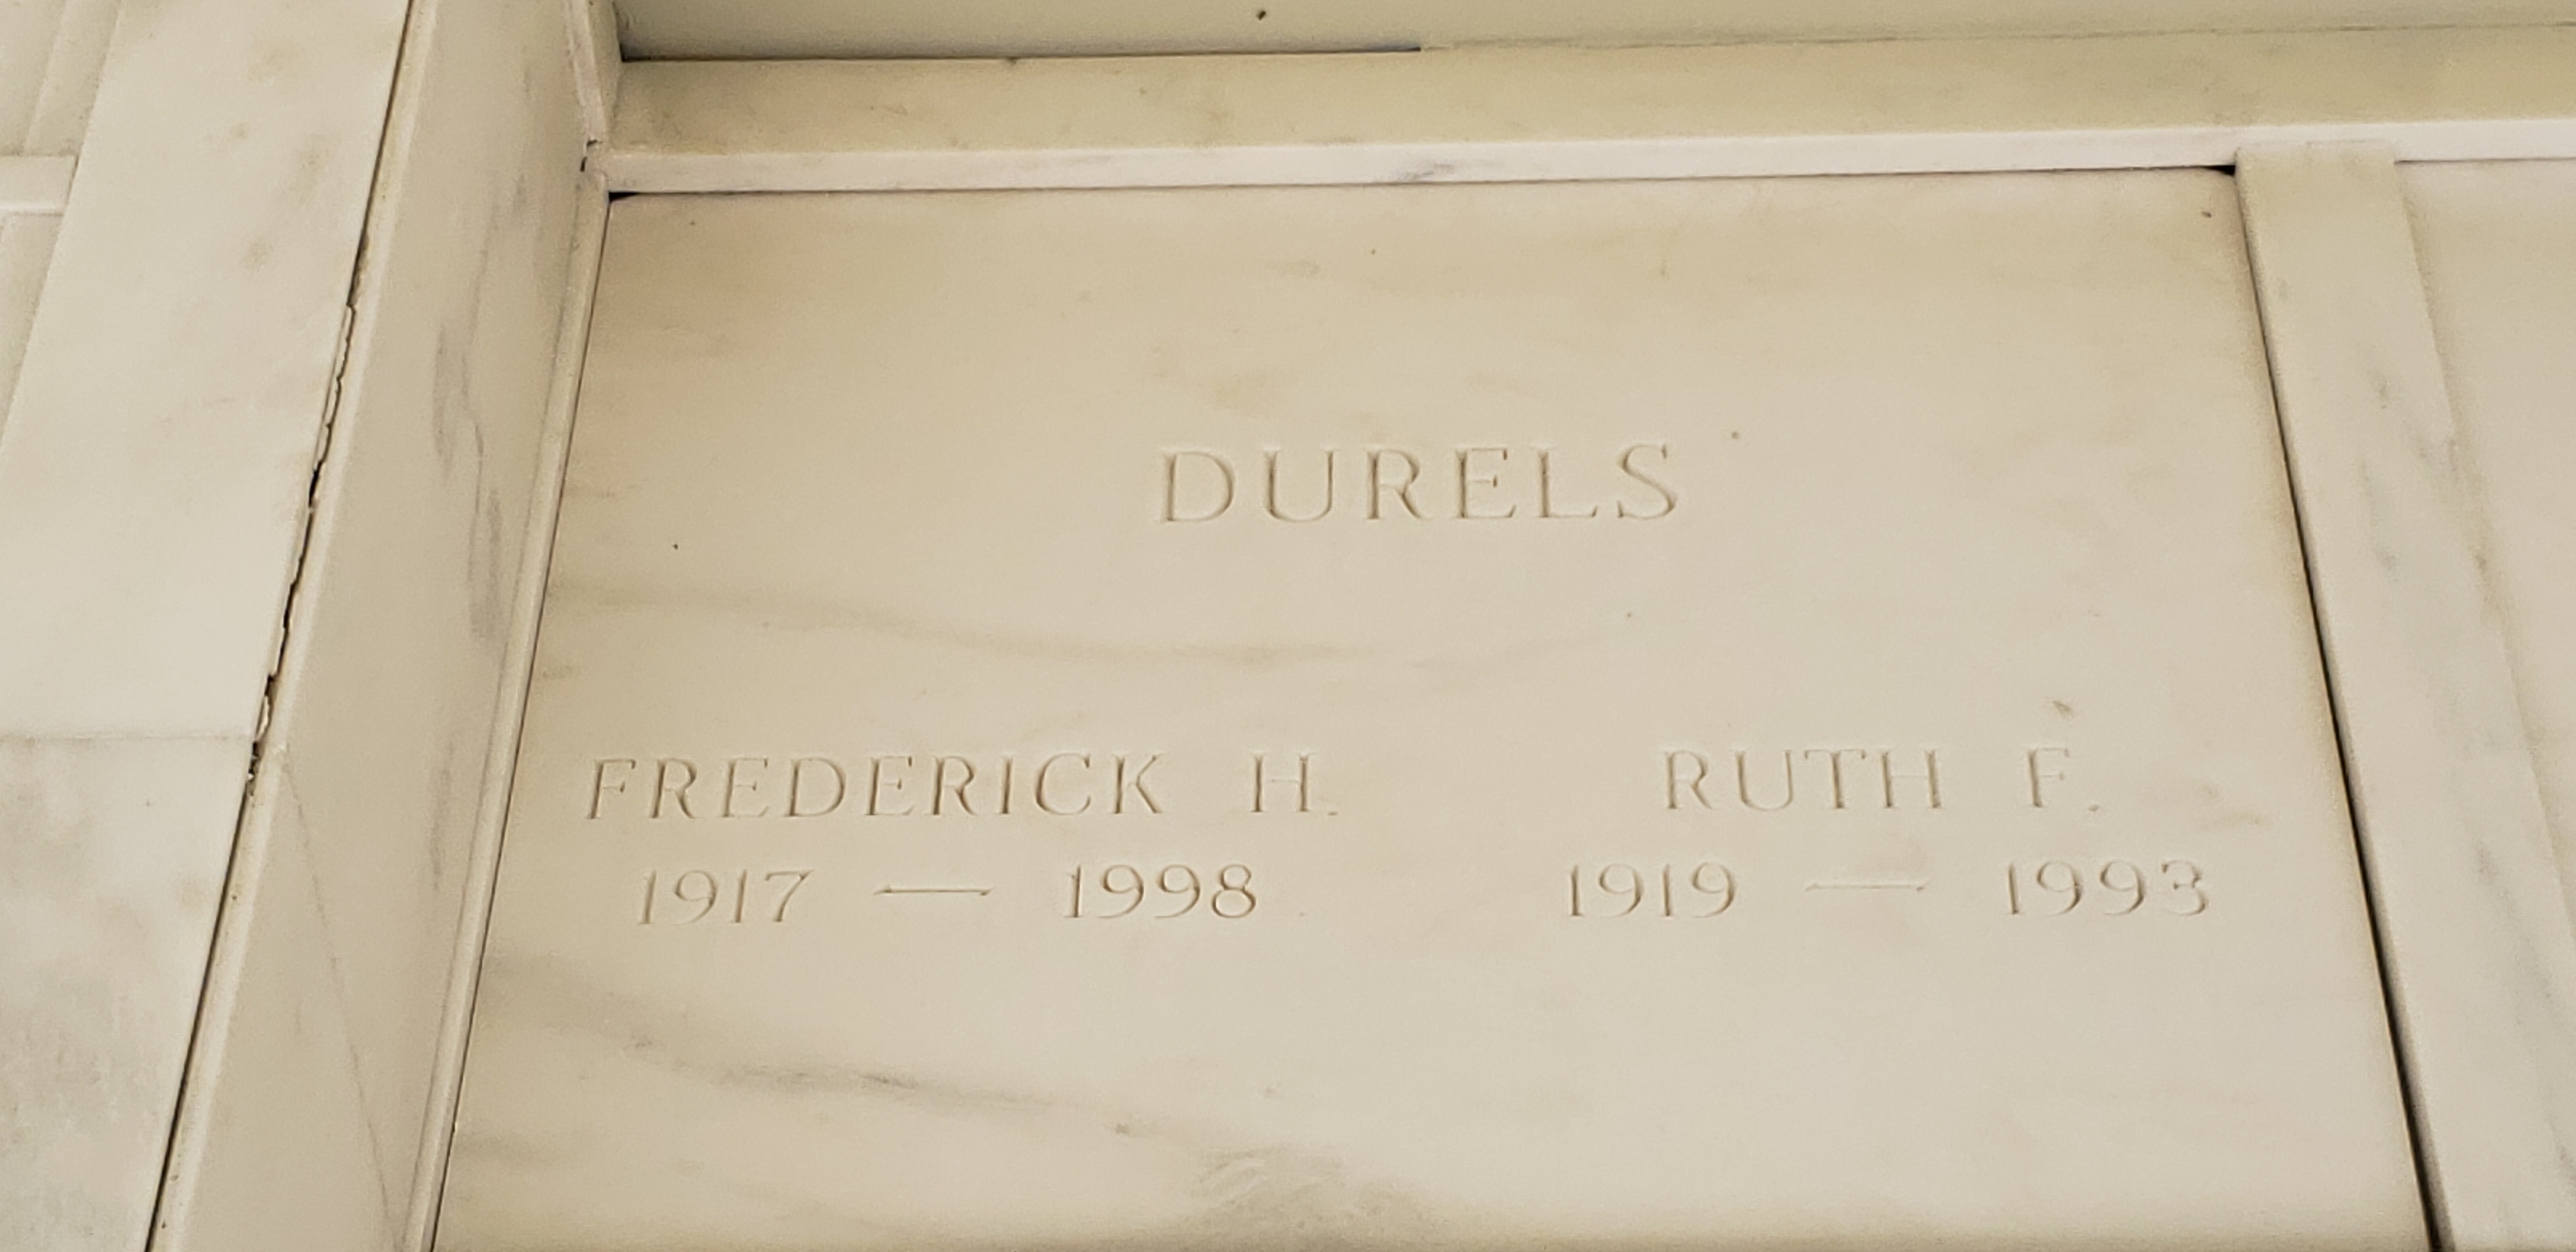 Ruth F Durels